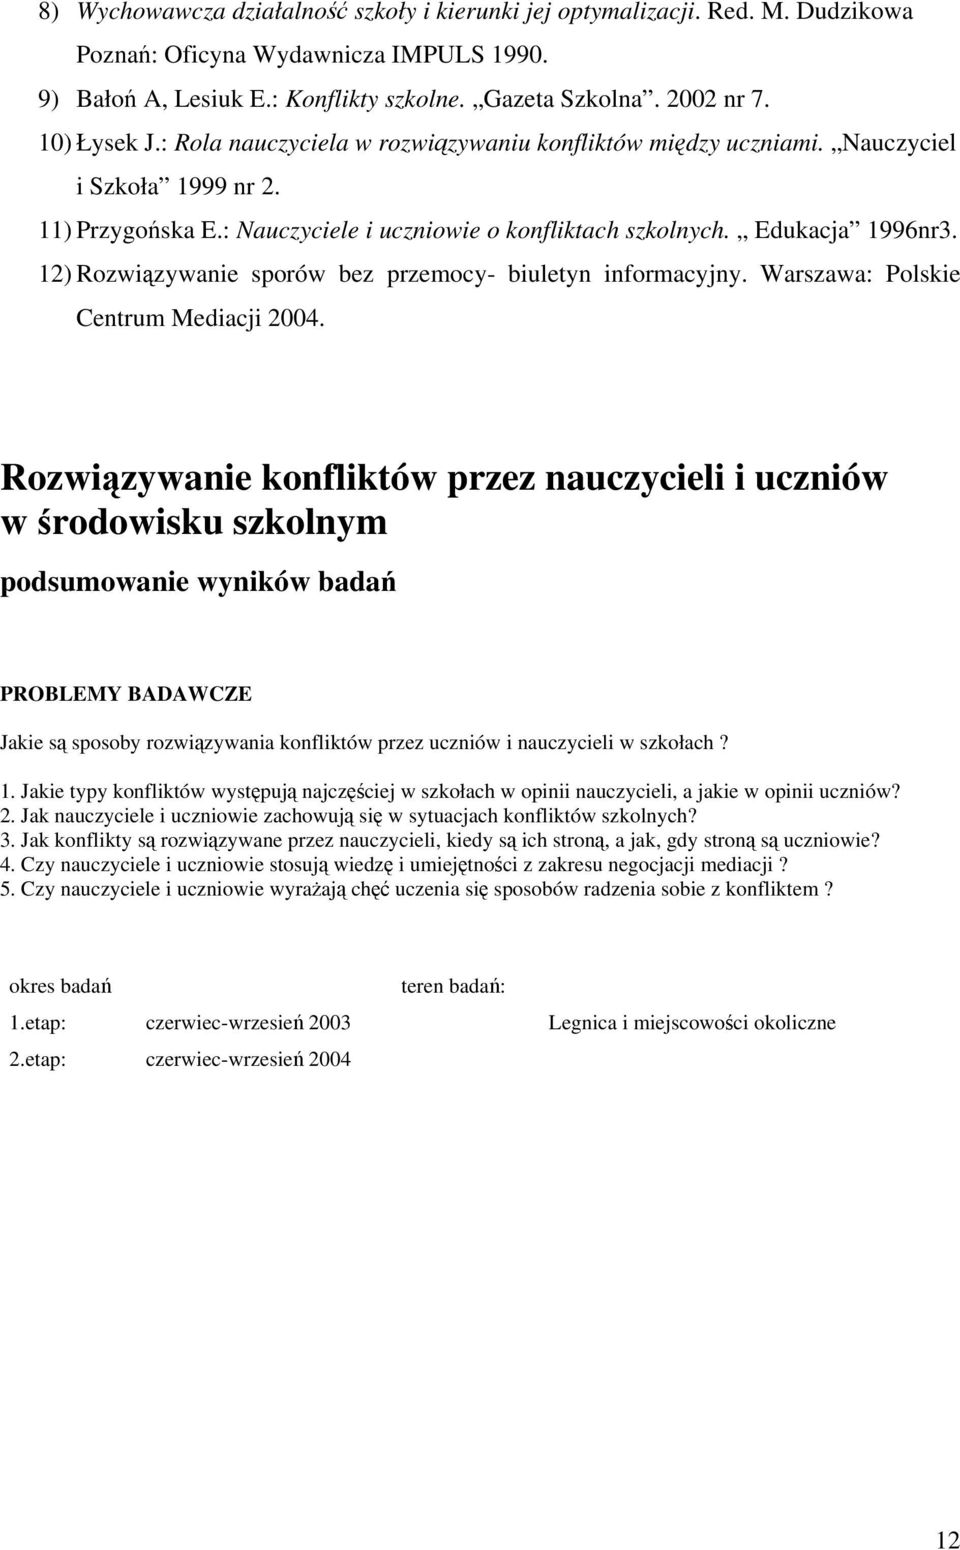 12) Rozwizywanie sporów bez przemocy- biuletyn informacyjny. Warszawa: Polskie Centrum Mediacji 2004.